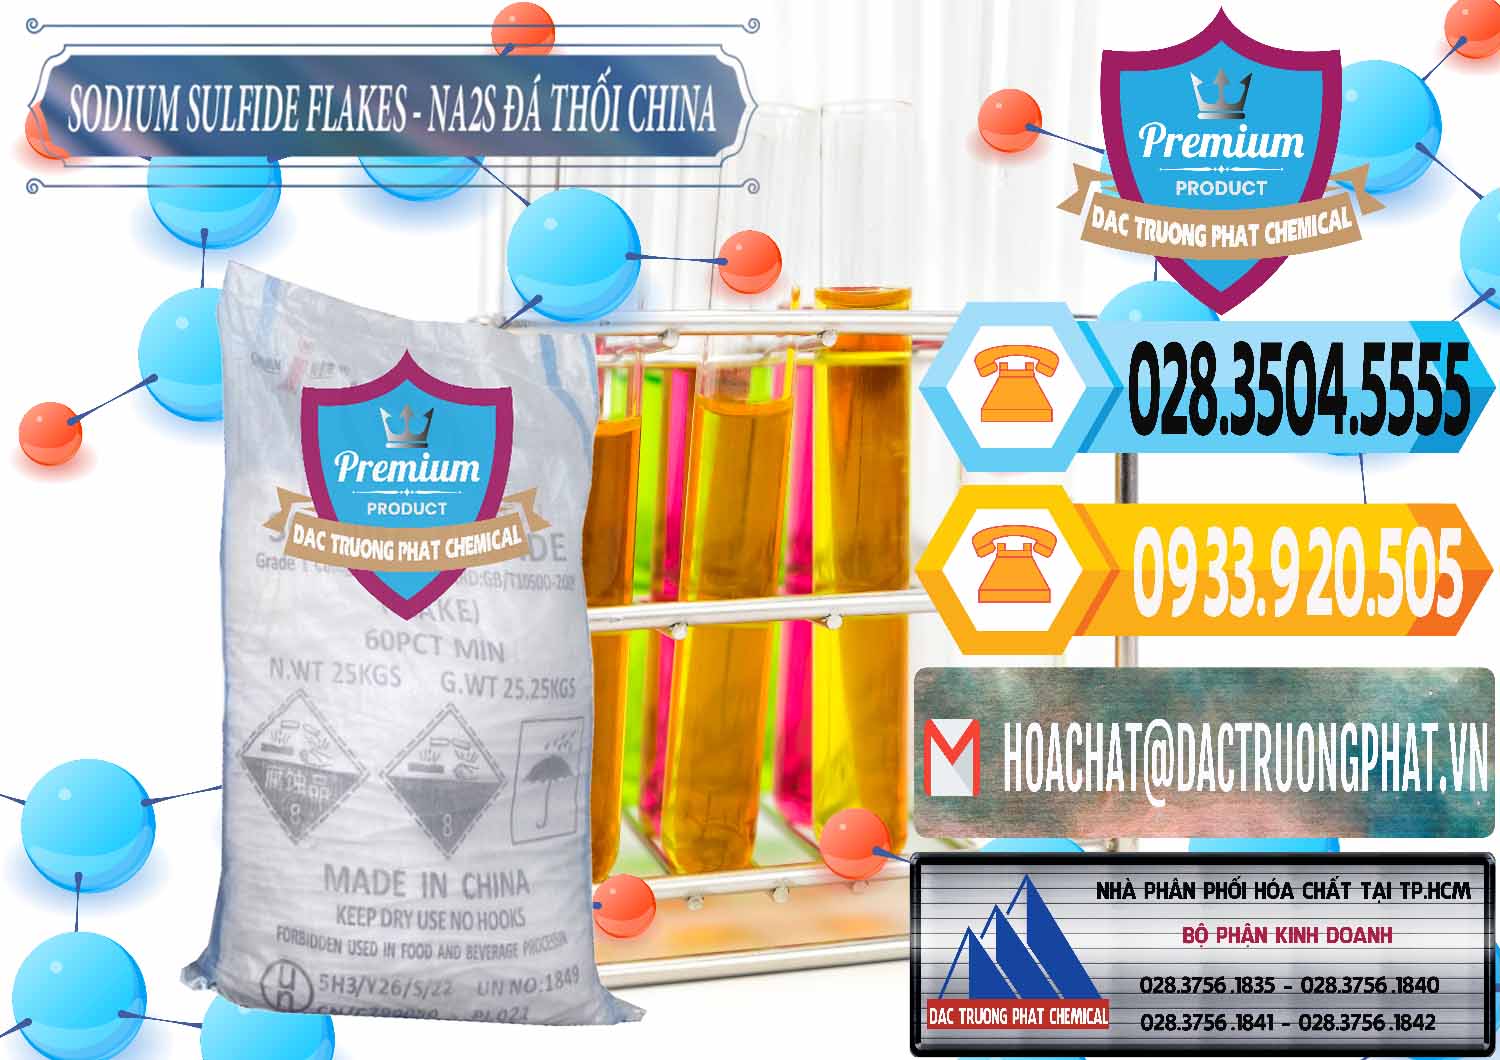 Đơn vị chuyên phân phối và bán Sodium Sulfide NA2S – Đá Thối Liyuan Trung Quốc China - 0385 - Công ty chuyên bán & cung cấp hóa chất tại TP.HCM - hoachattayrua.net